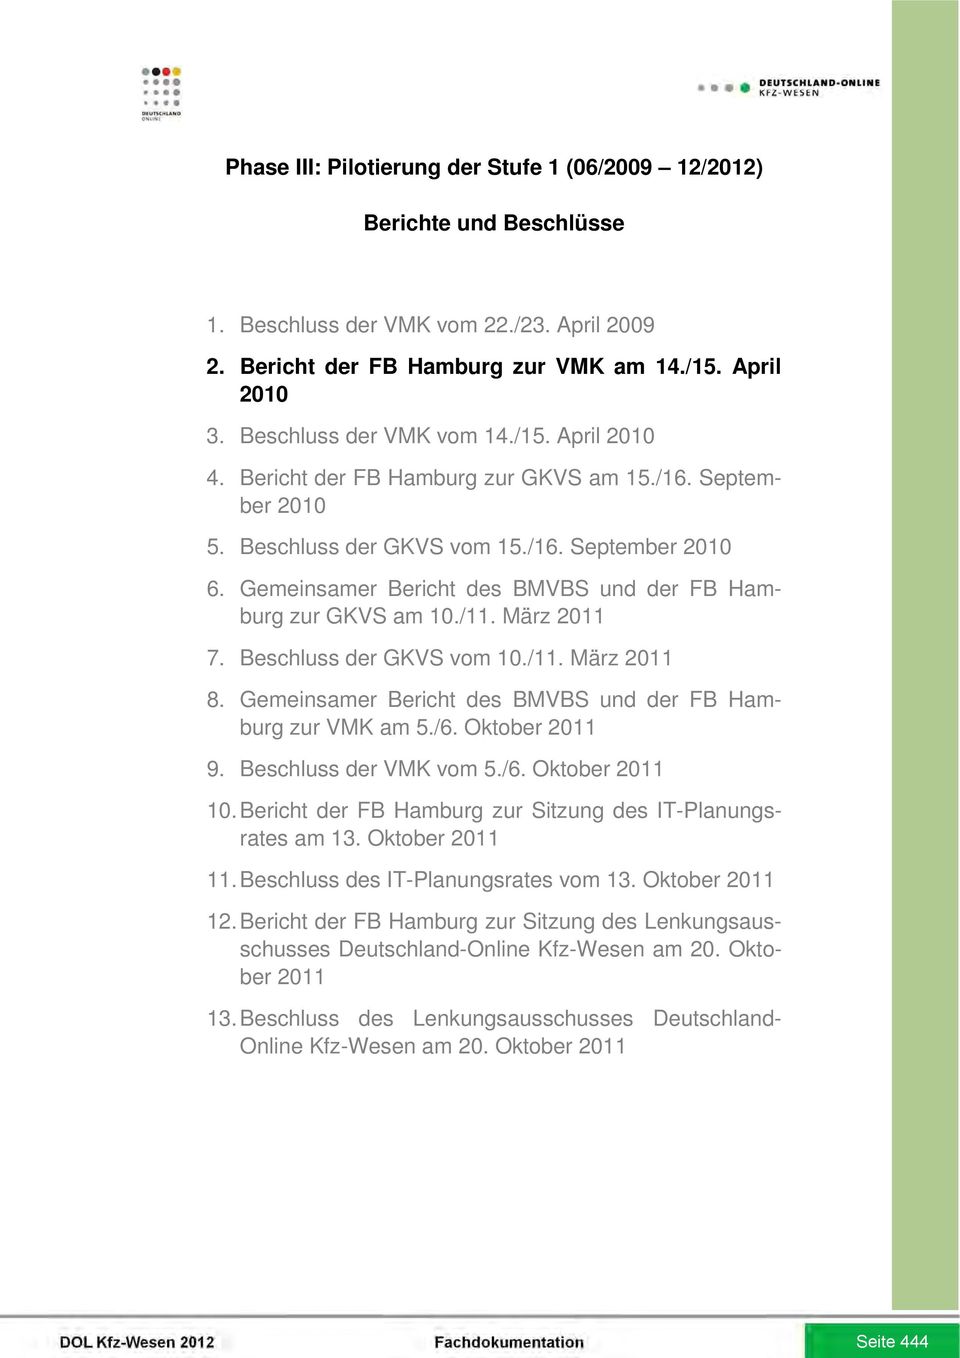 Gemeinsamer Bericht des BMVBS und der FB Hamburg zur GKVS am 10./11. März 2011 7. Beschluss der GKVS vom 10./11. März 2011 8. Gemeinsamer Bericht des BMVBS und der FB Hamburg zur VMK am 5./6.